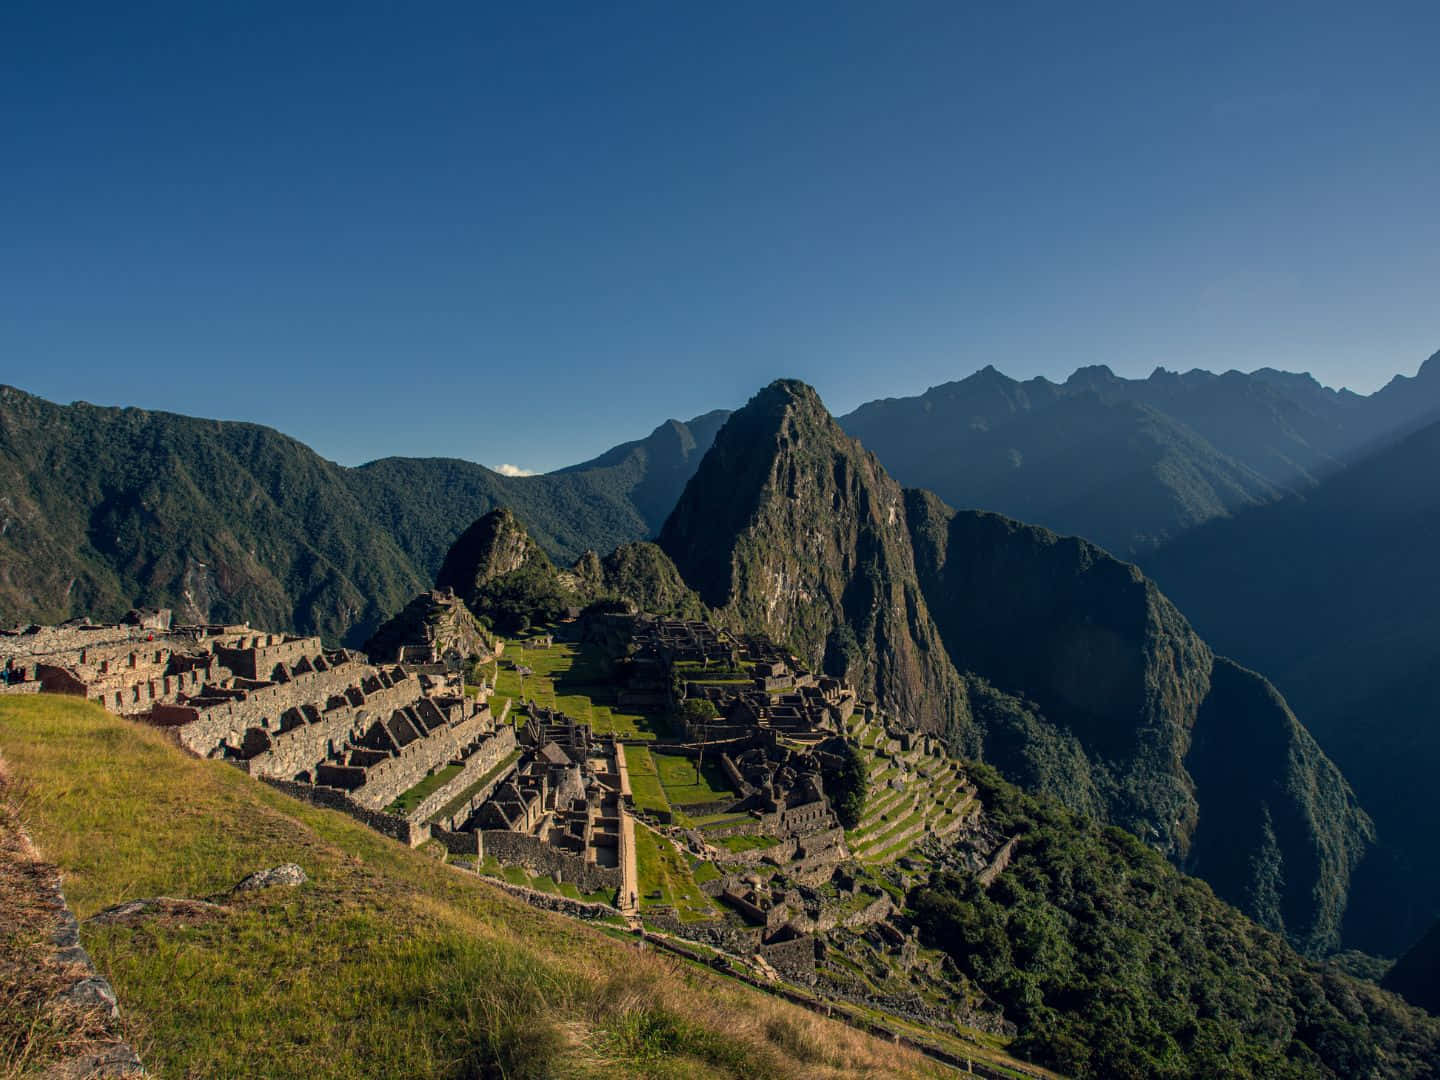 Machu Picchu, Peru Wallpaper